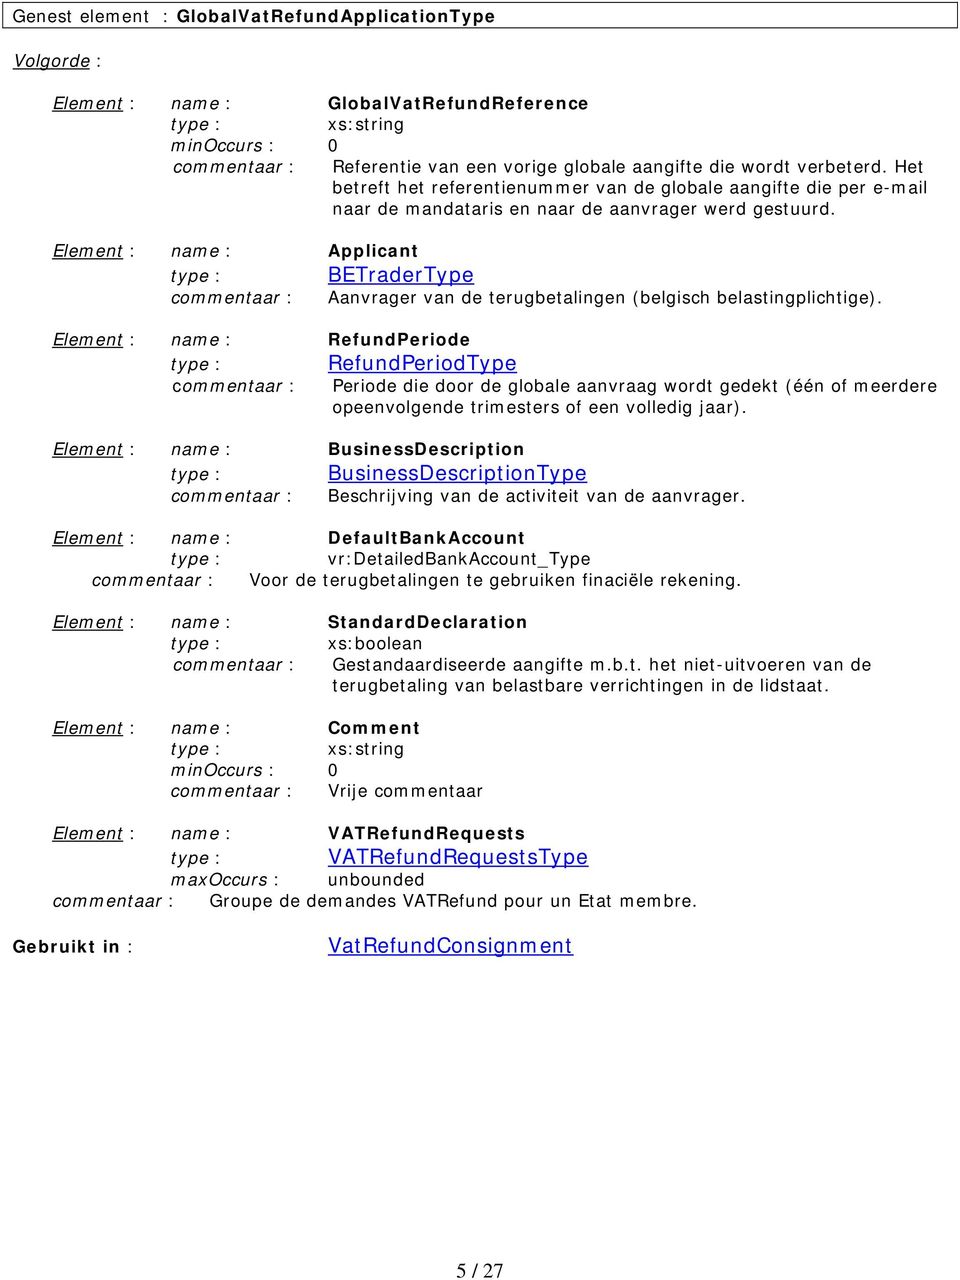 Element : name : Applicant BETraderType commentaar : Aanvrager van de terugbetalingen (belgisch belastingplichtige).